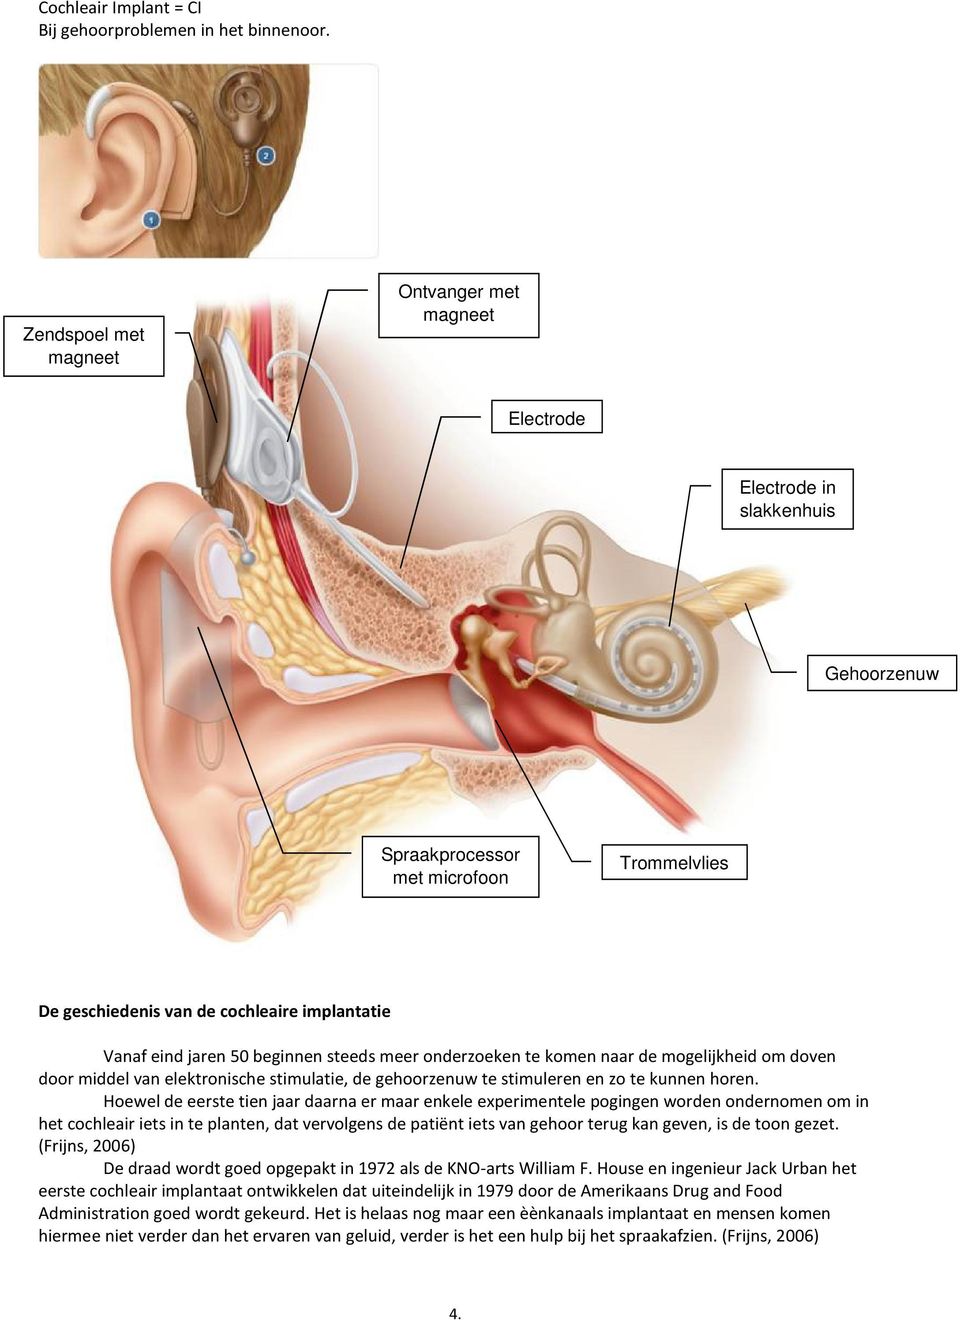 beginnen steeds meer onderzoeken te komen naar de mogelijkheid om doven door middel van elektronische stimulatie, de gehoorzenuw te stimuleren en zo te kunnen horen.